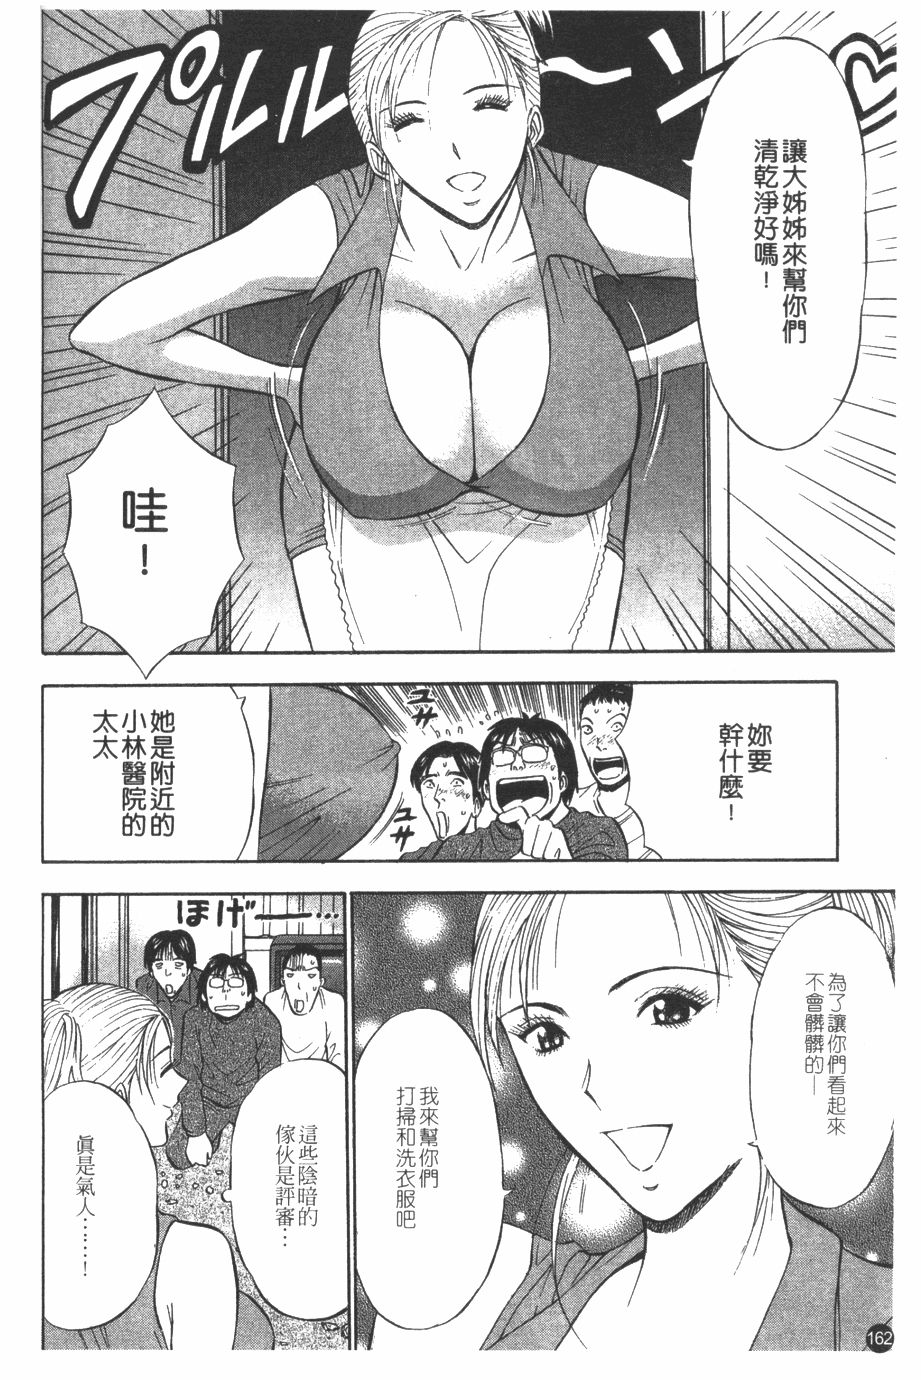 [Nagashima Chosuke] Sakuradoori no Megami - The Venus of SAKURA St. 1 [Chinese] 162